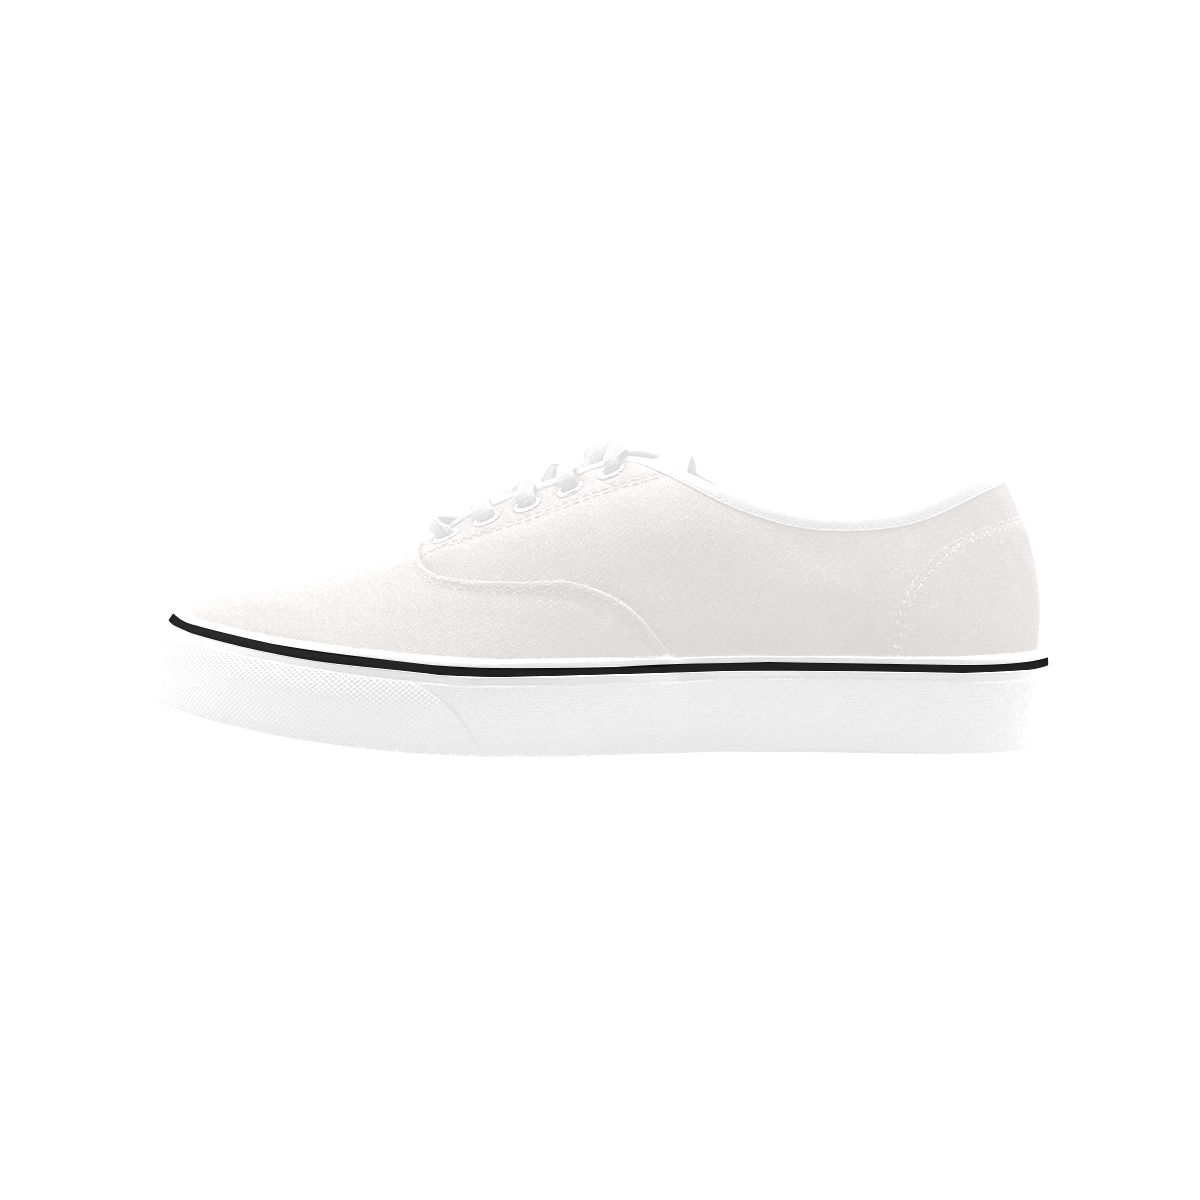 Classic Men's Canvas Low Top Shoes/Large (Model E001-4)